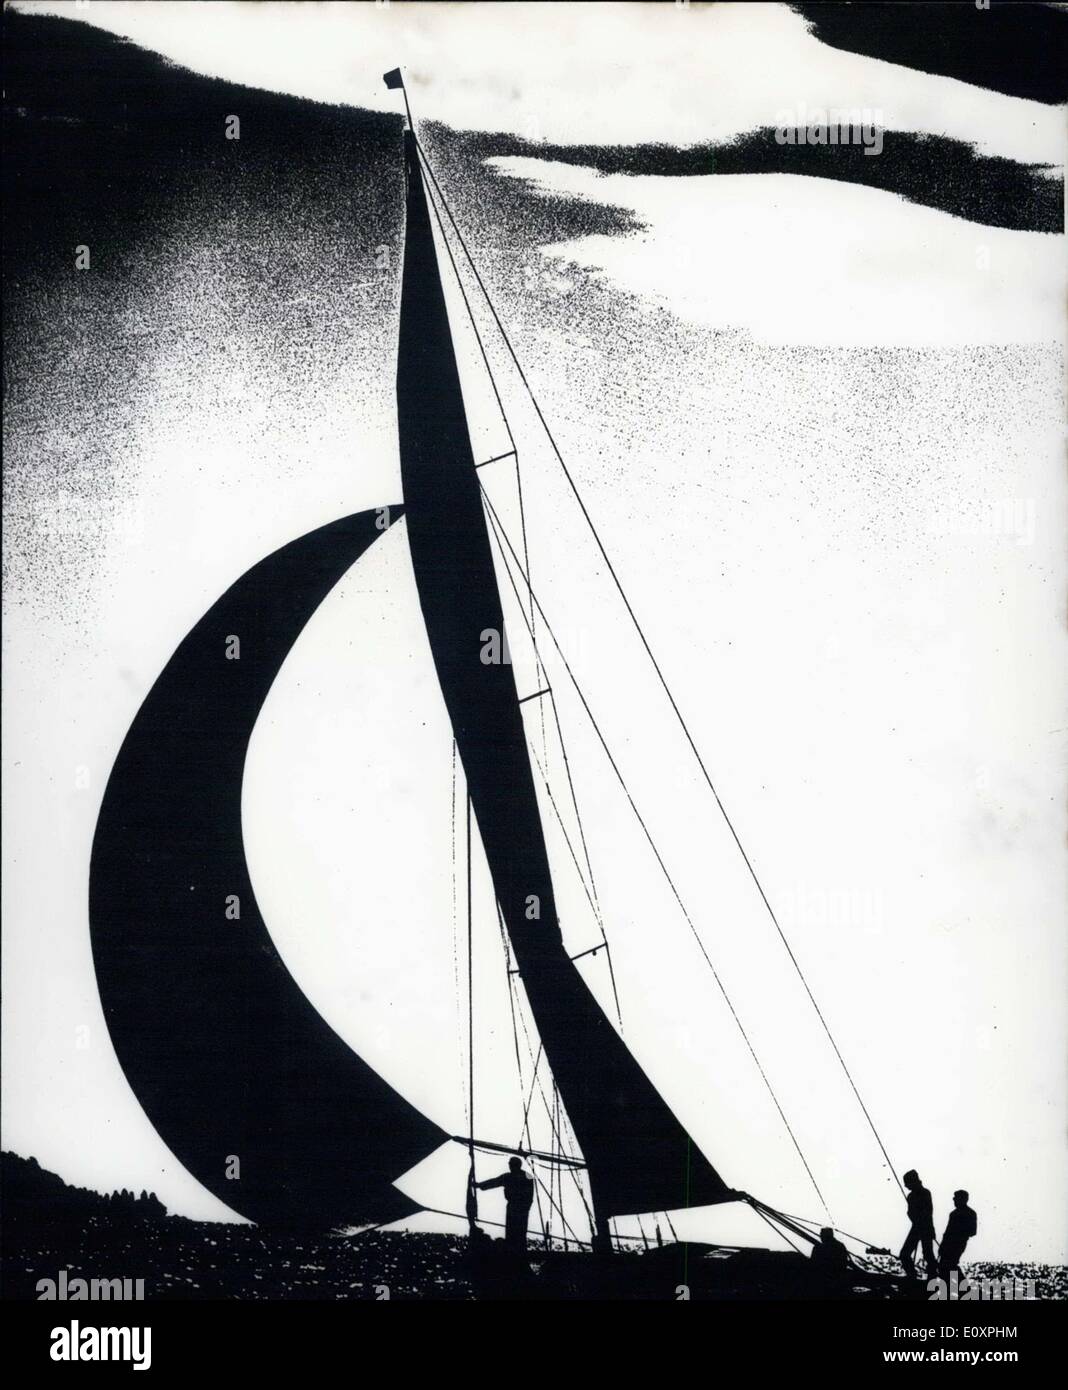 Lug. 31, 1967 - come il Flying Dutchman, questo yacht a vela scivola sul mare, il suo taglio di vela nel cielo. La foto è stata scattata nel corso di una gara di vela che utilizzato ''Nationaler Kreuzers. Foto Stock